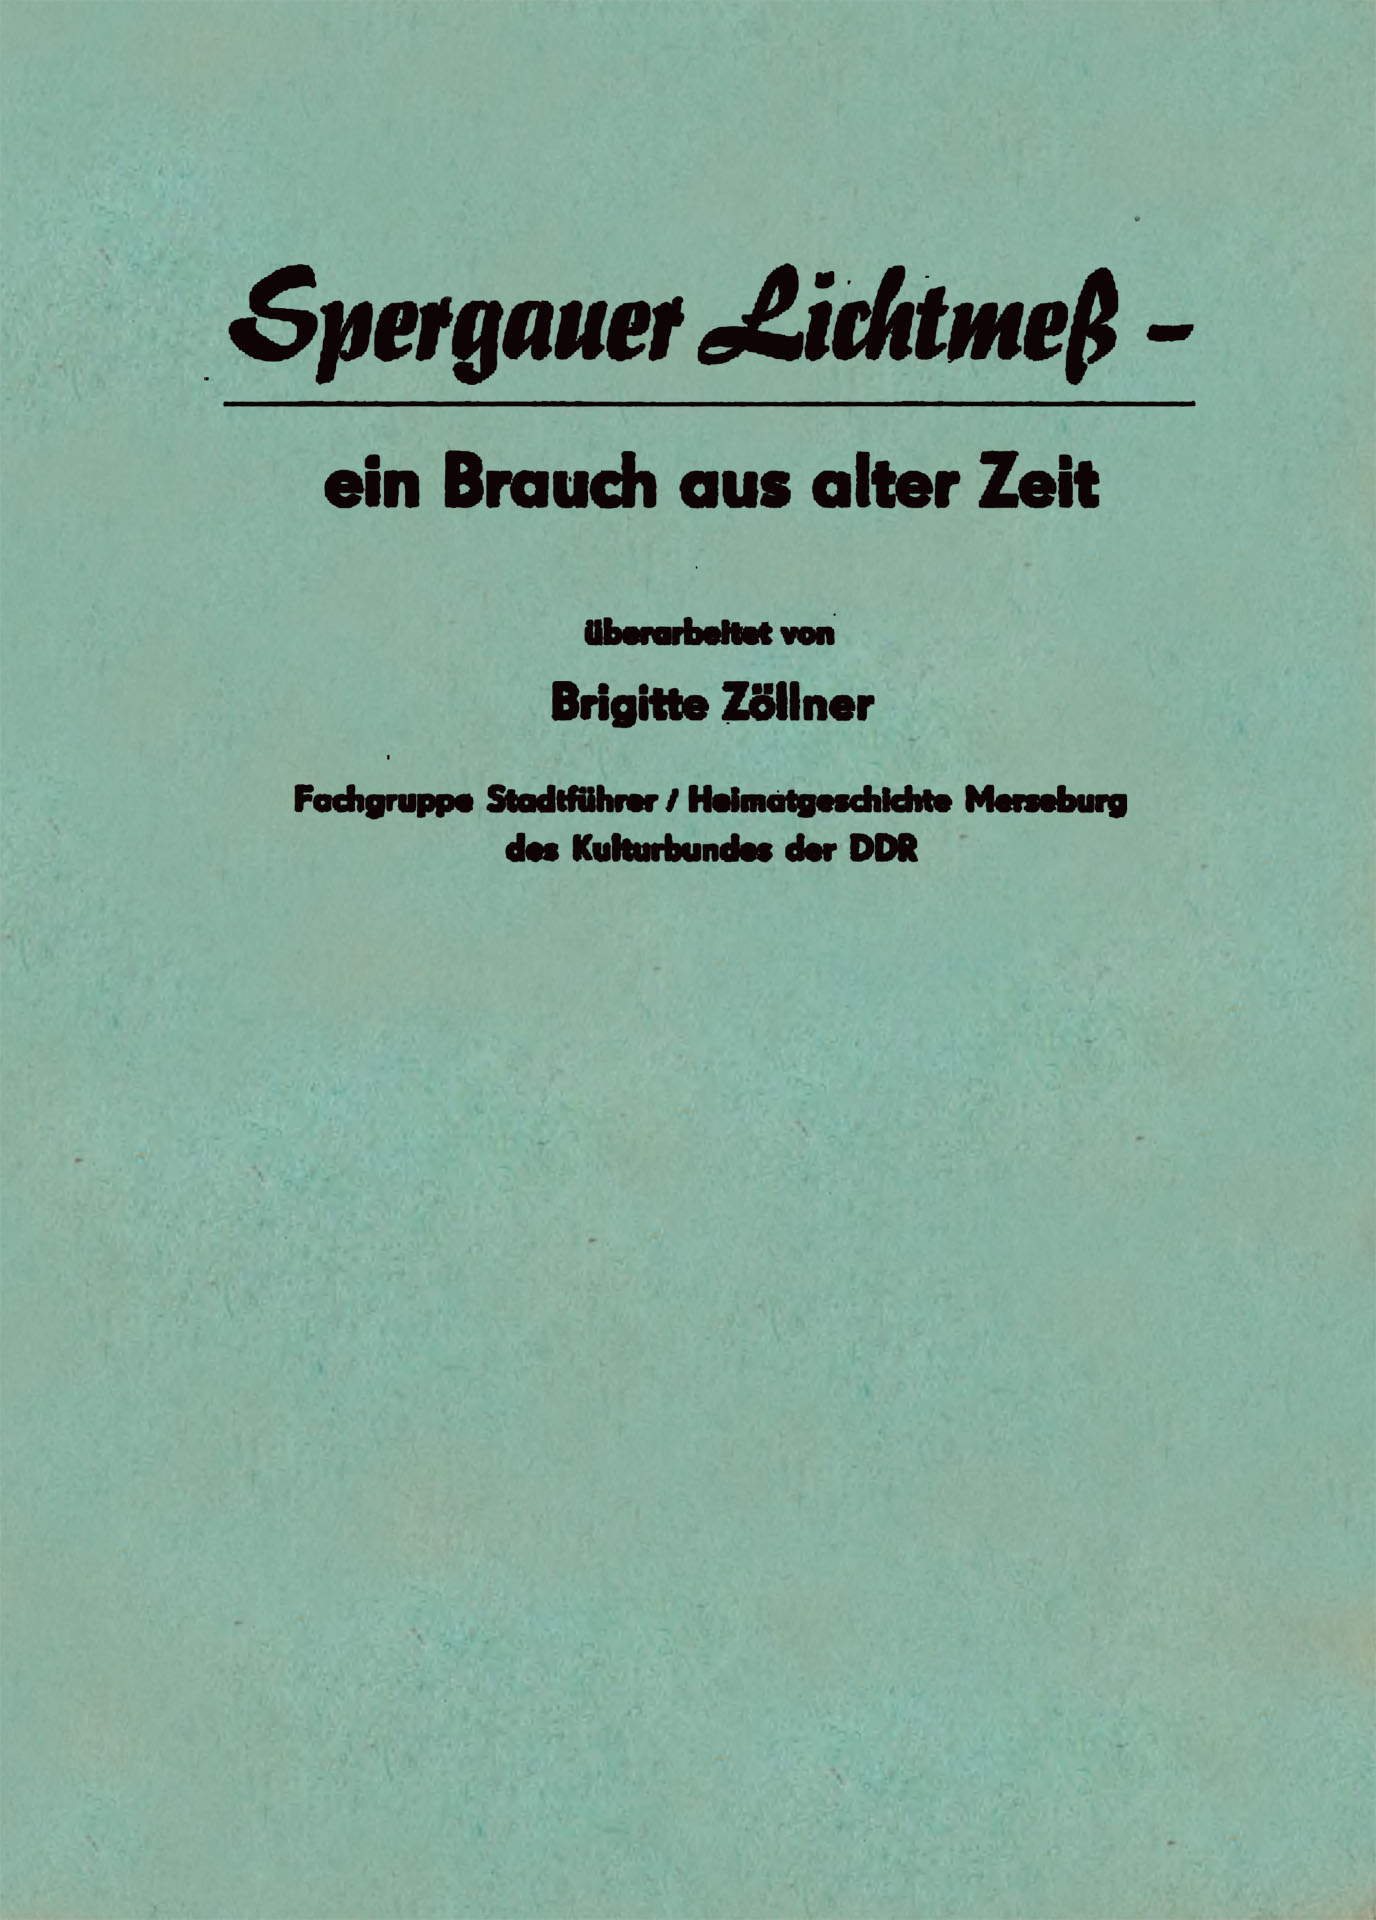 Spergauer-Lichtmeß - Zöllner, Brigitte